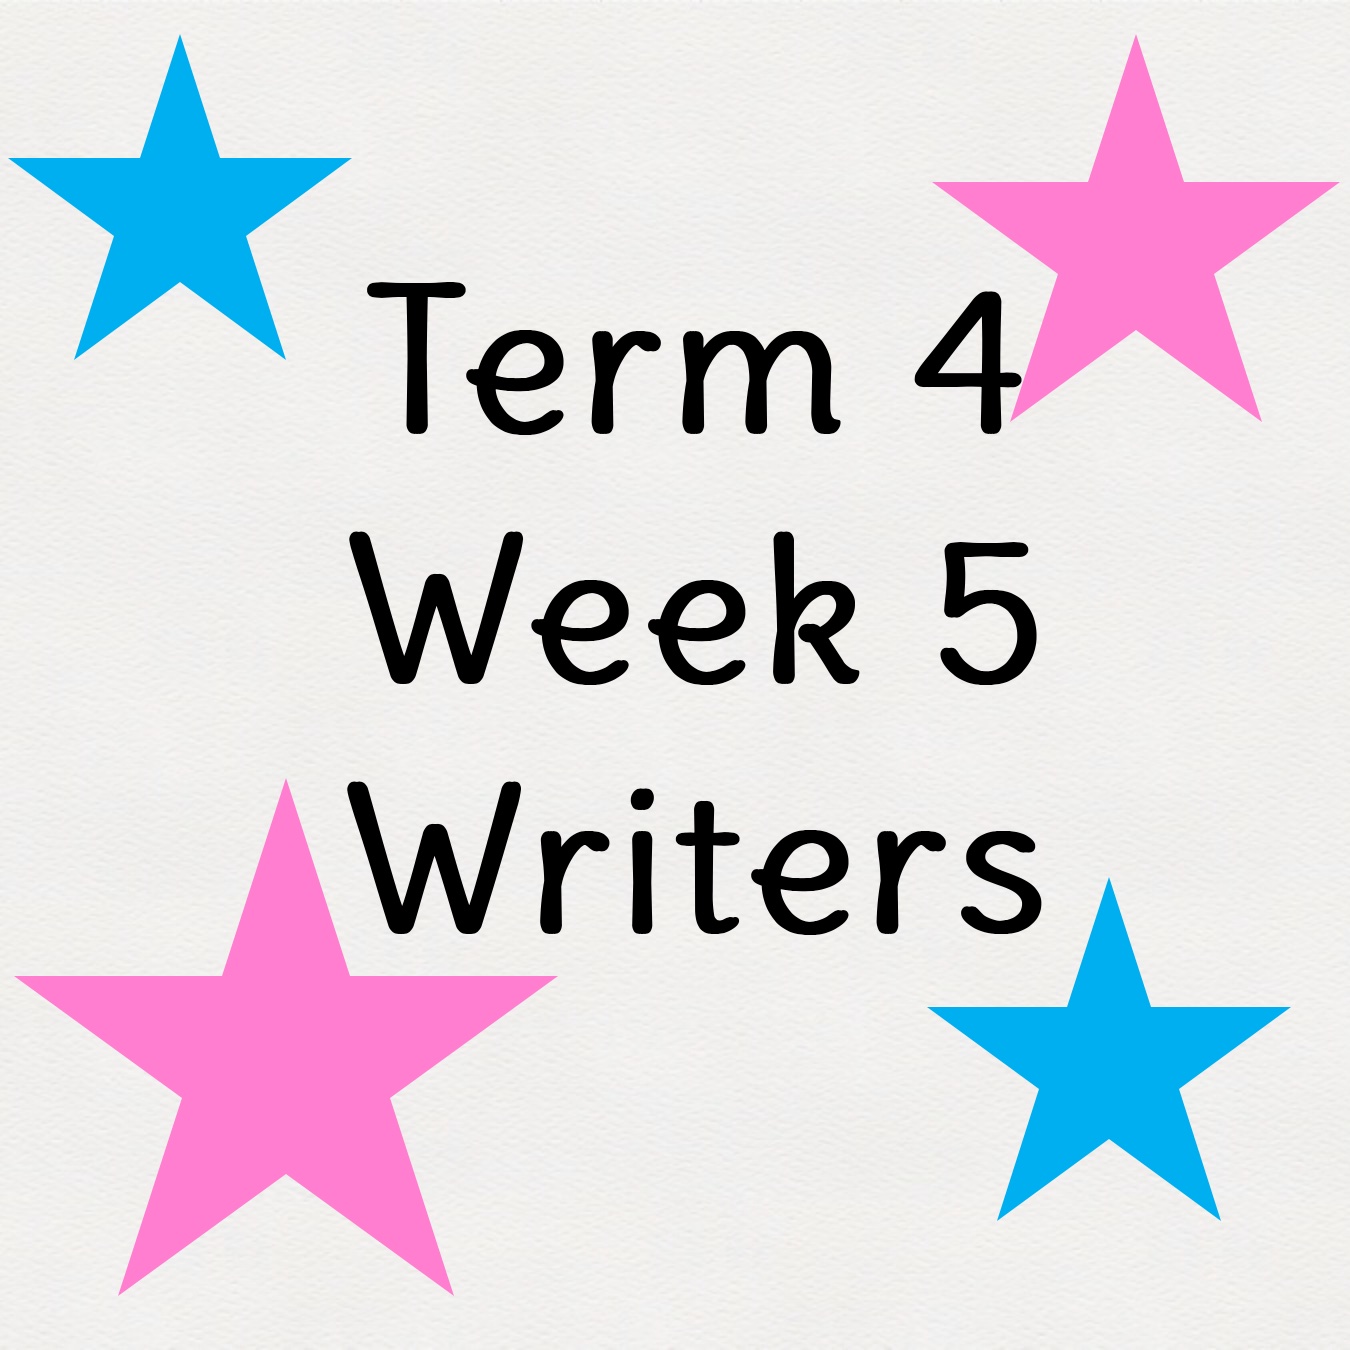 Week 5 Writers 